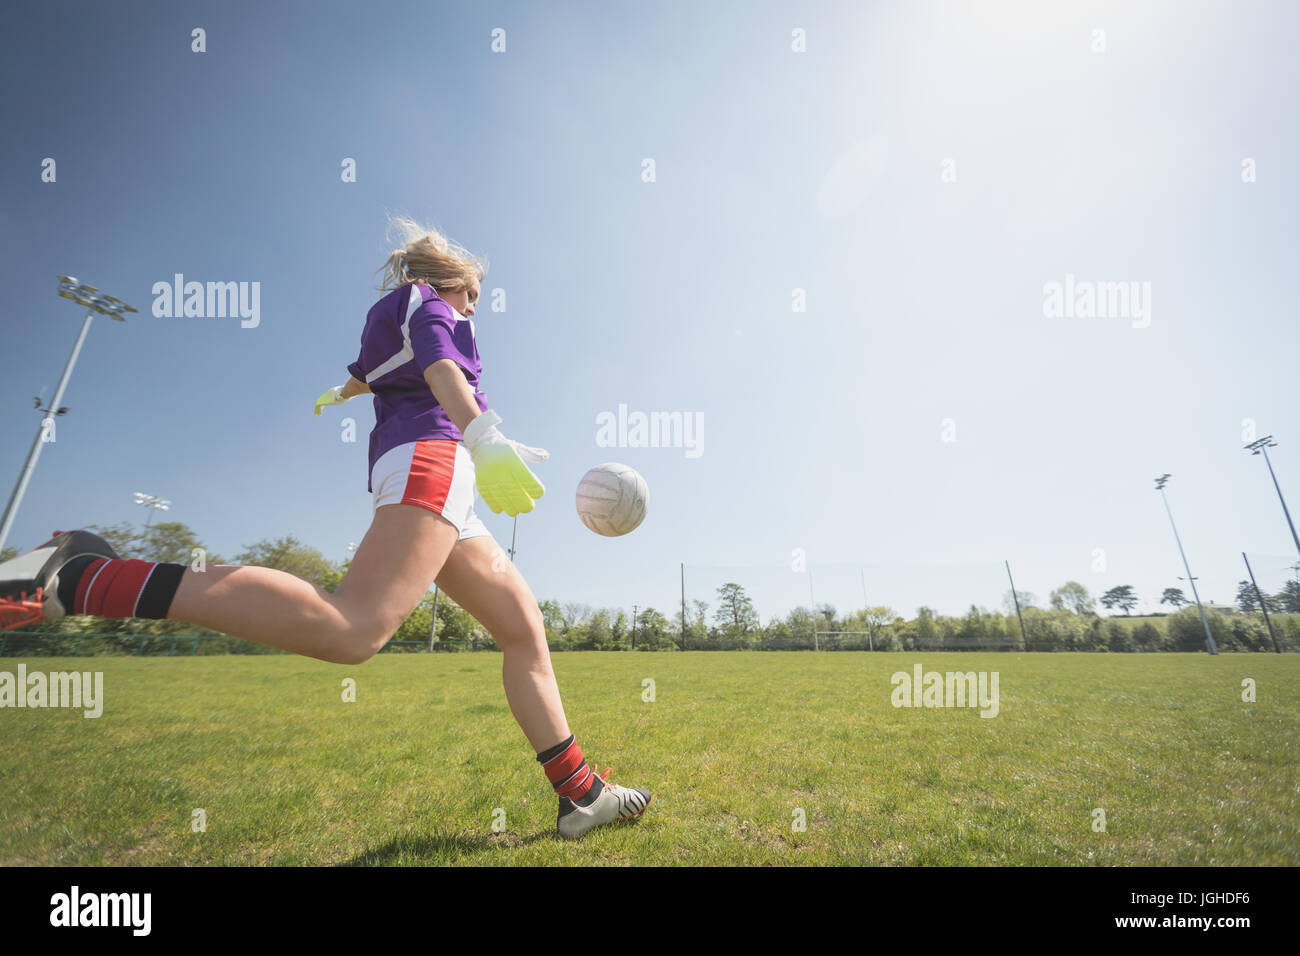 Toute la longueur de femme jouant au football sur terrain contre ciel lors de journée ensoleillée Banque D'Images